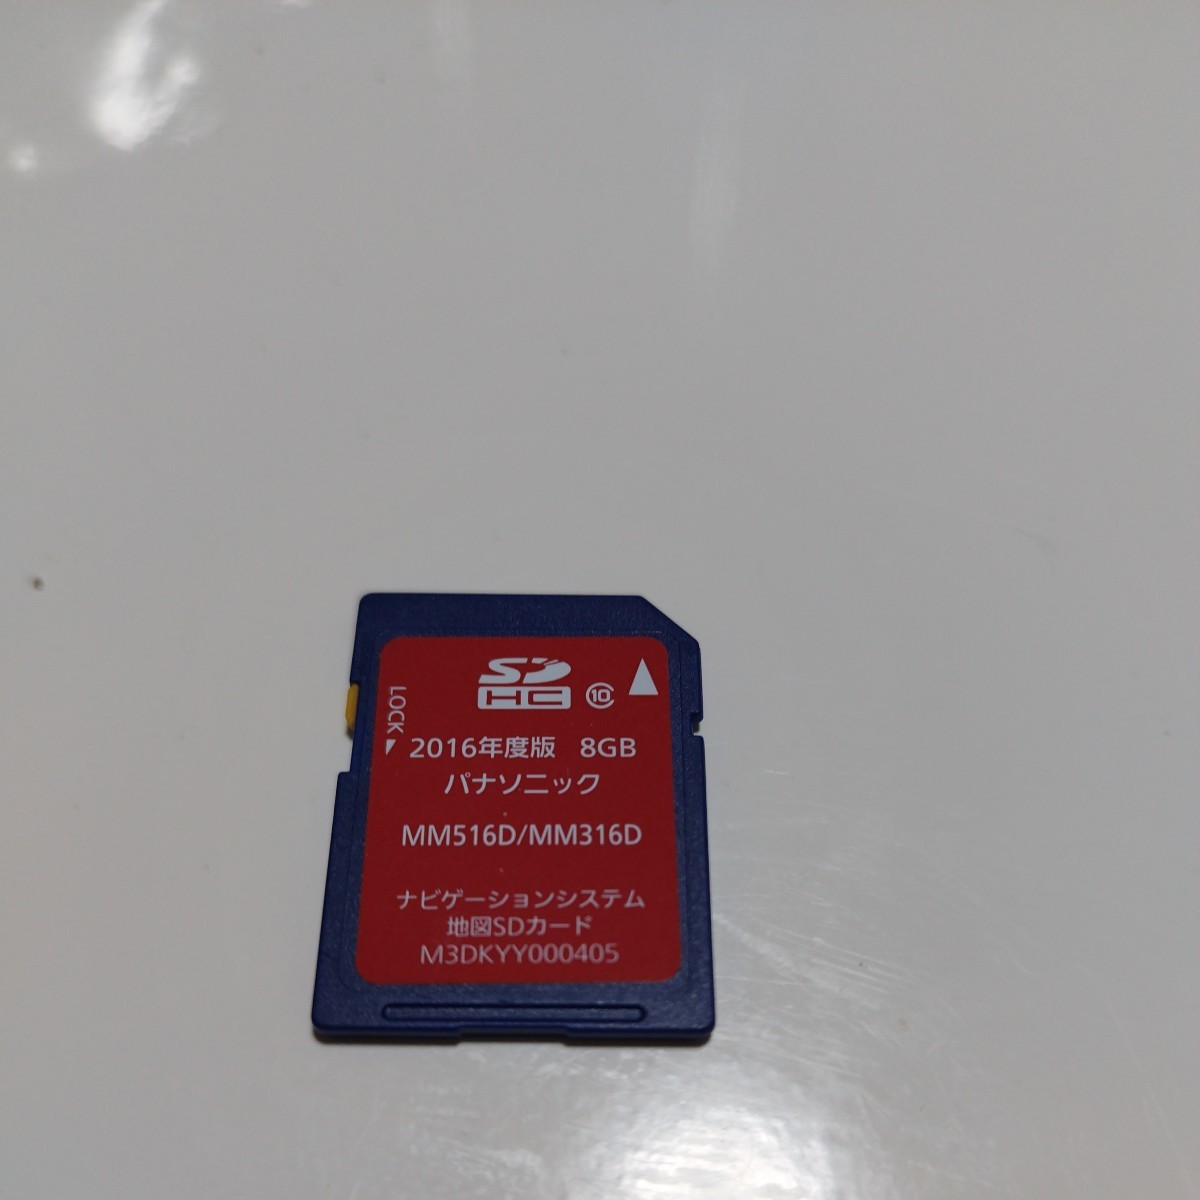 日産純正MM516D/MM316D地図SDカード - カーナビ